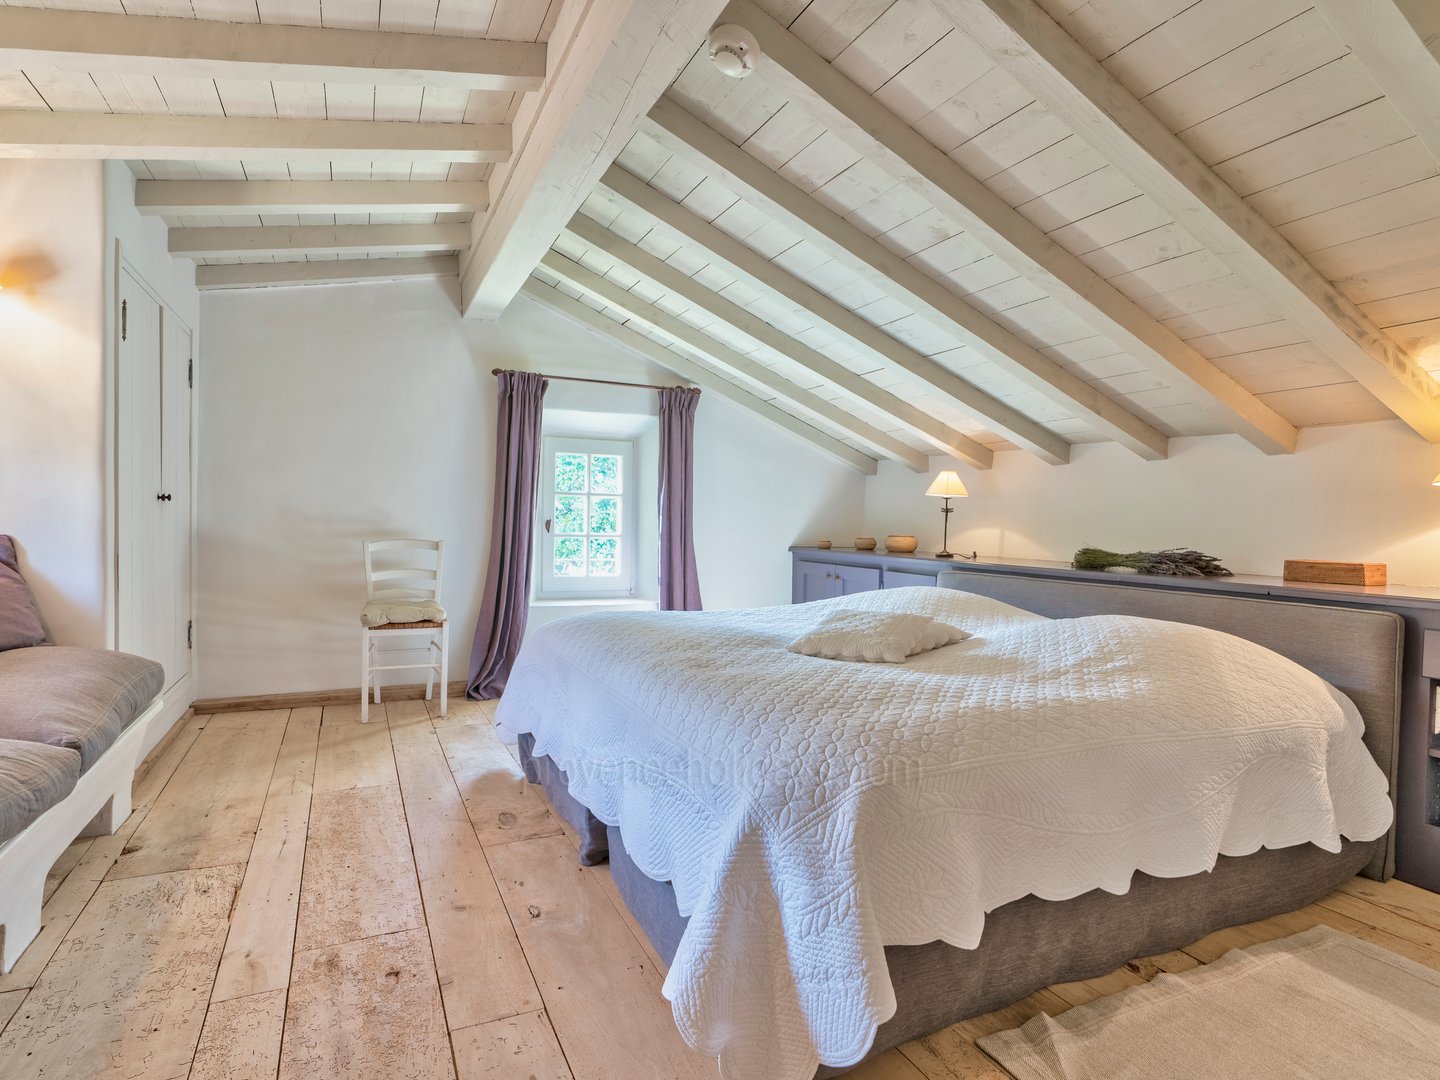 59 - Domaine de la Sainte Victoire: Villa: Bedroom